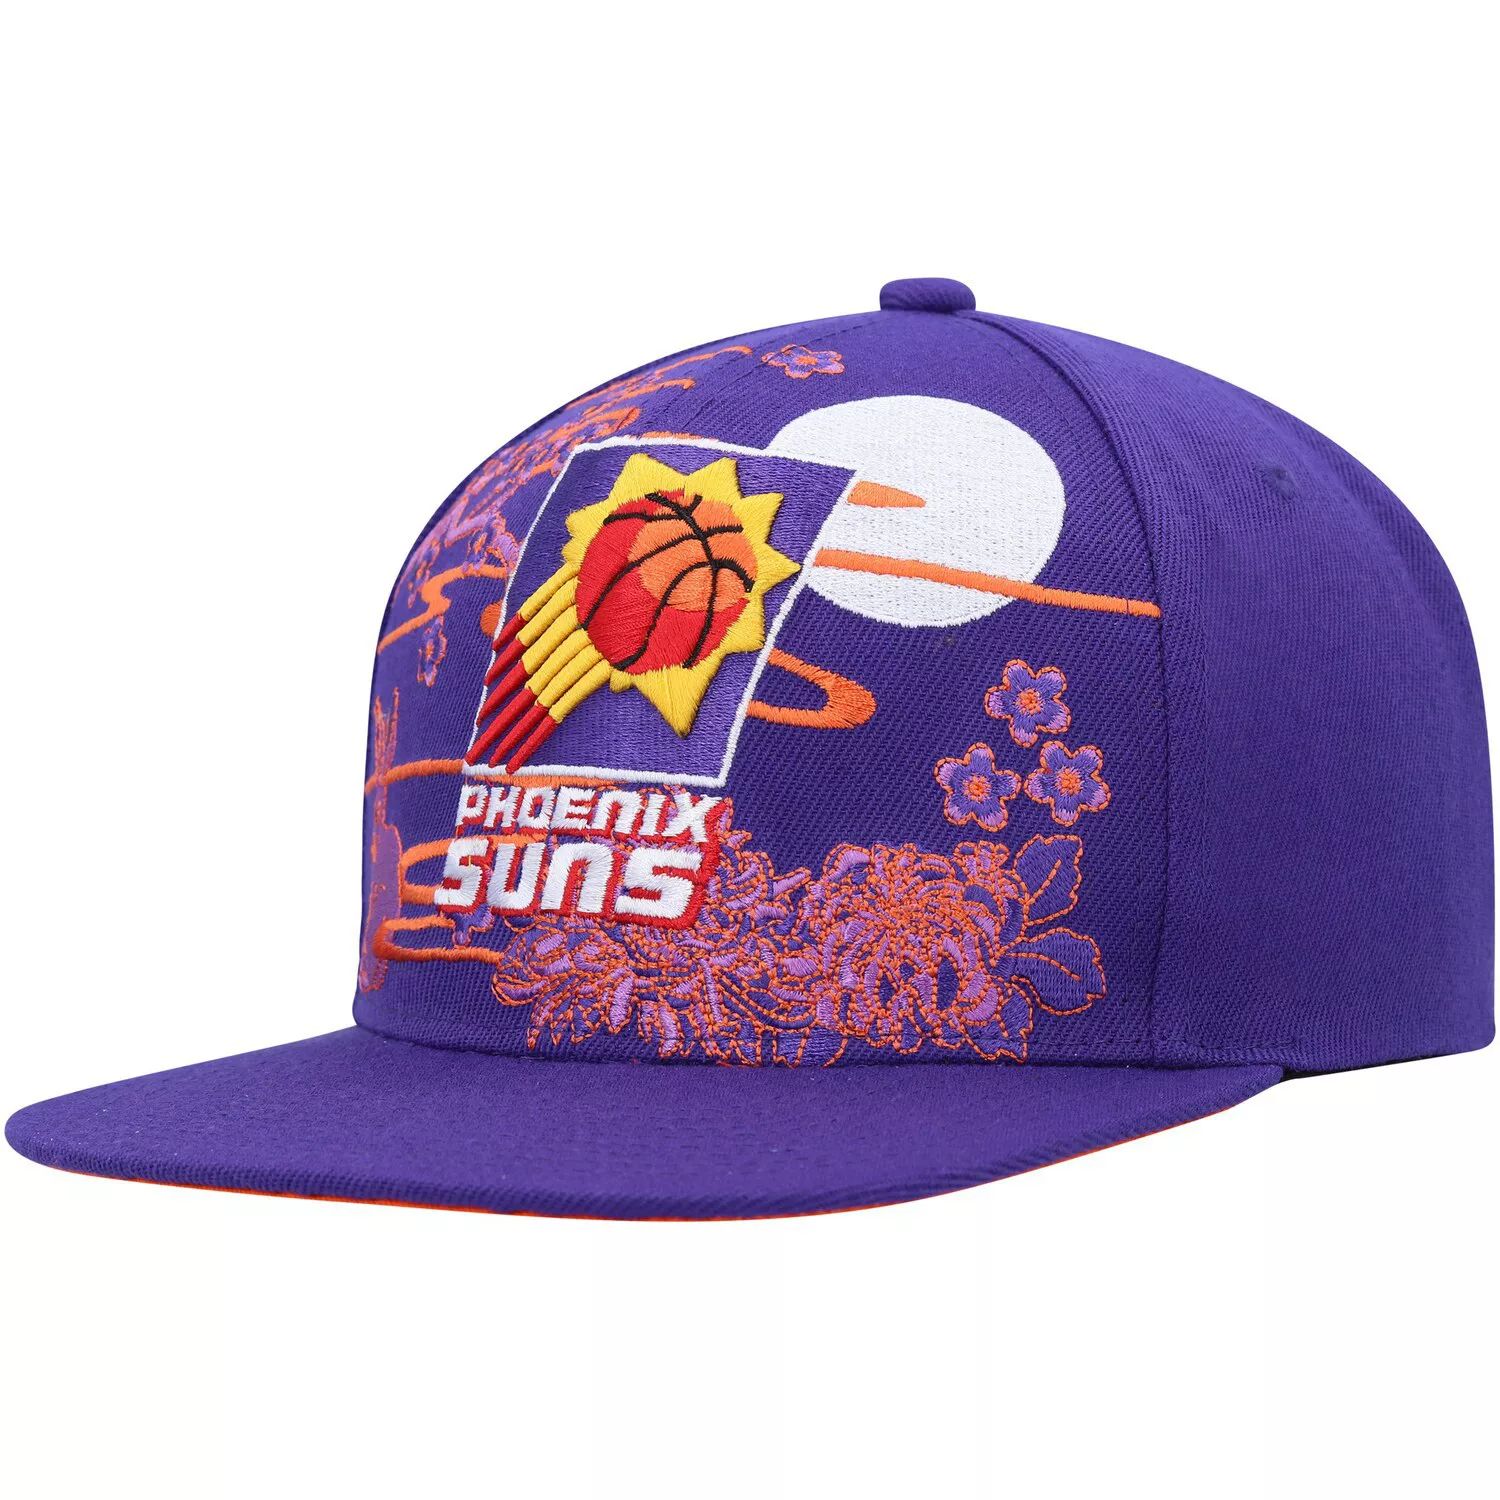 Мужская фиолетовая шляпа Mitchell & Ness Phoenix Suns из твердой древесины, классическая шляпа с изображением азиатского наследия, Snapback